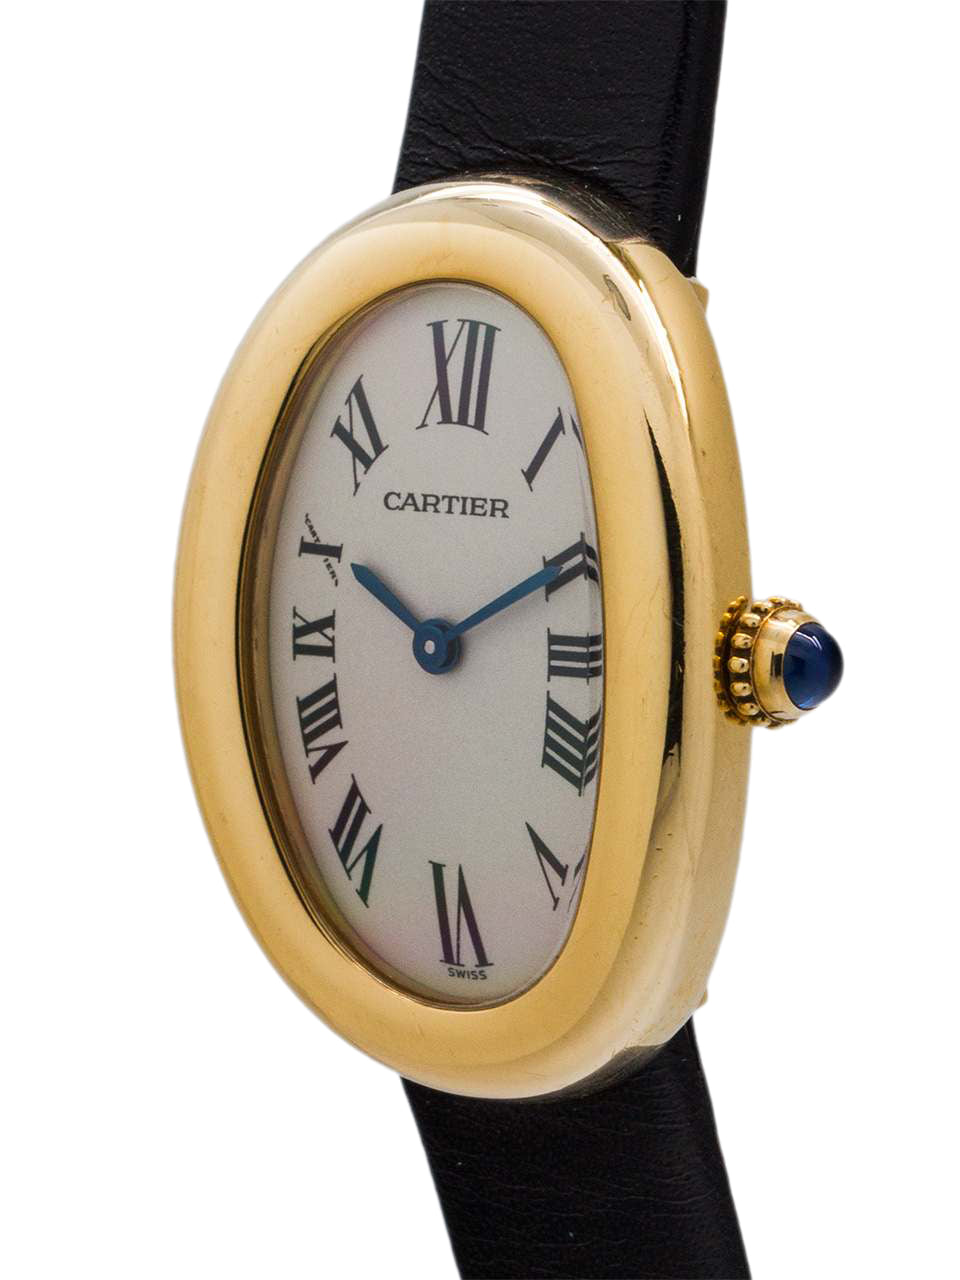 Cartier bagnoire 1954 2